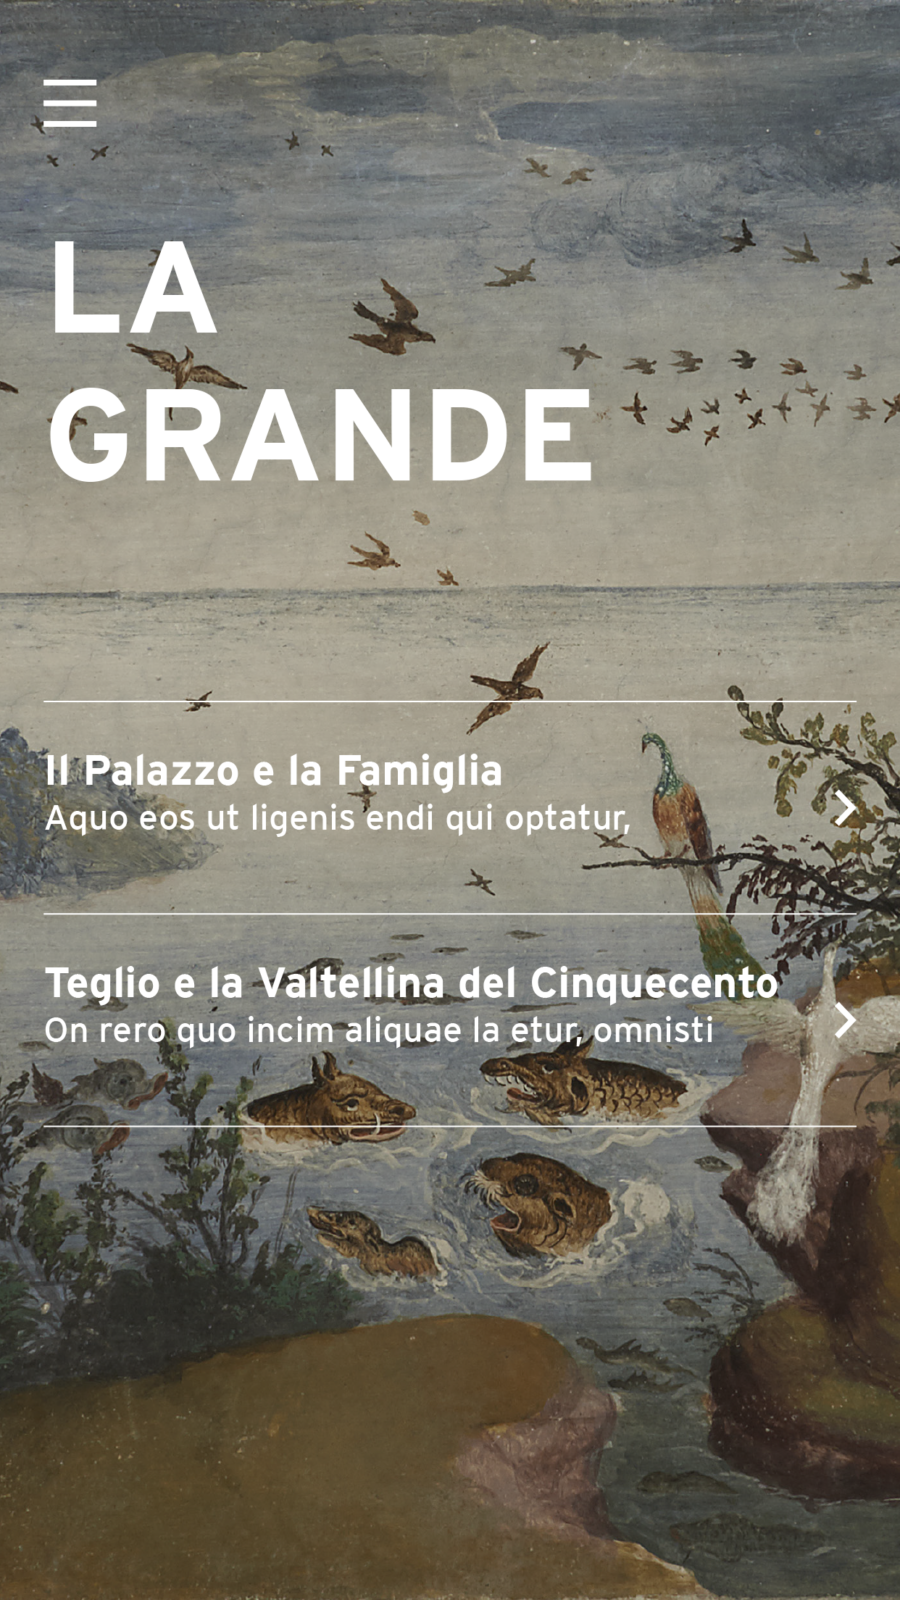 Screen dell'app mobile "la grande" di Palazzo Besta sviluppata da ETT, come sfondo un'illustrazione dipinta di cielo e mare con gli animali che la popolano